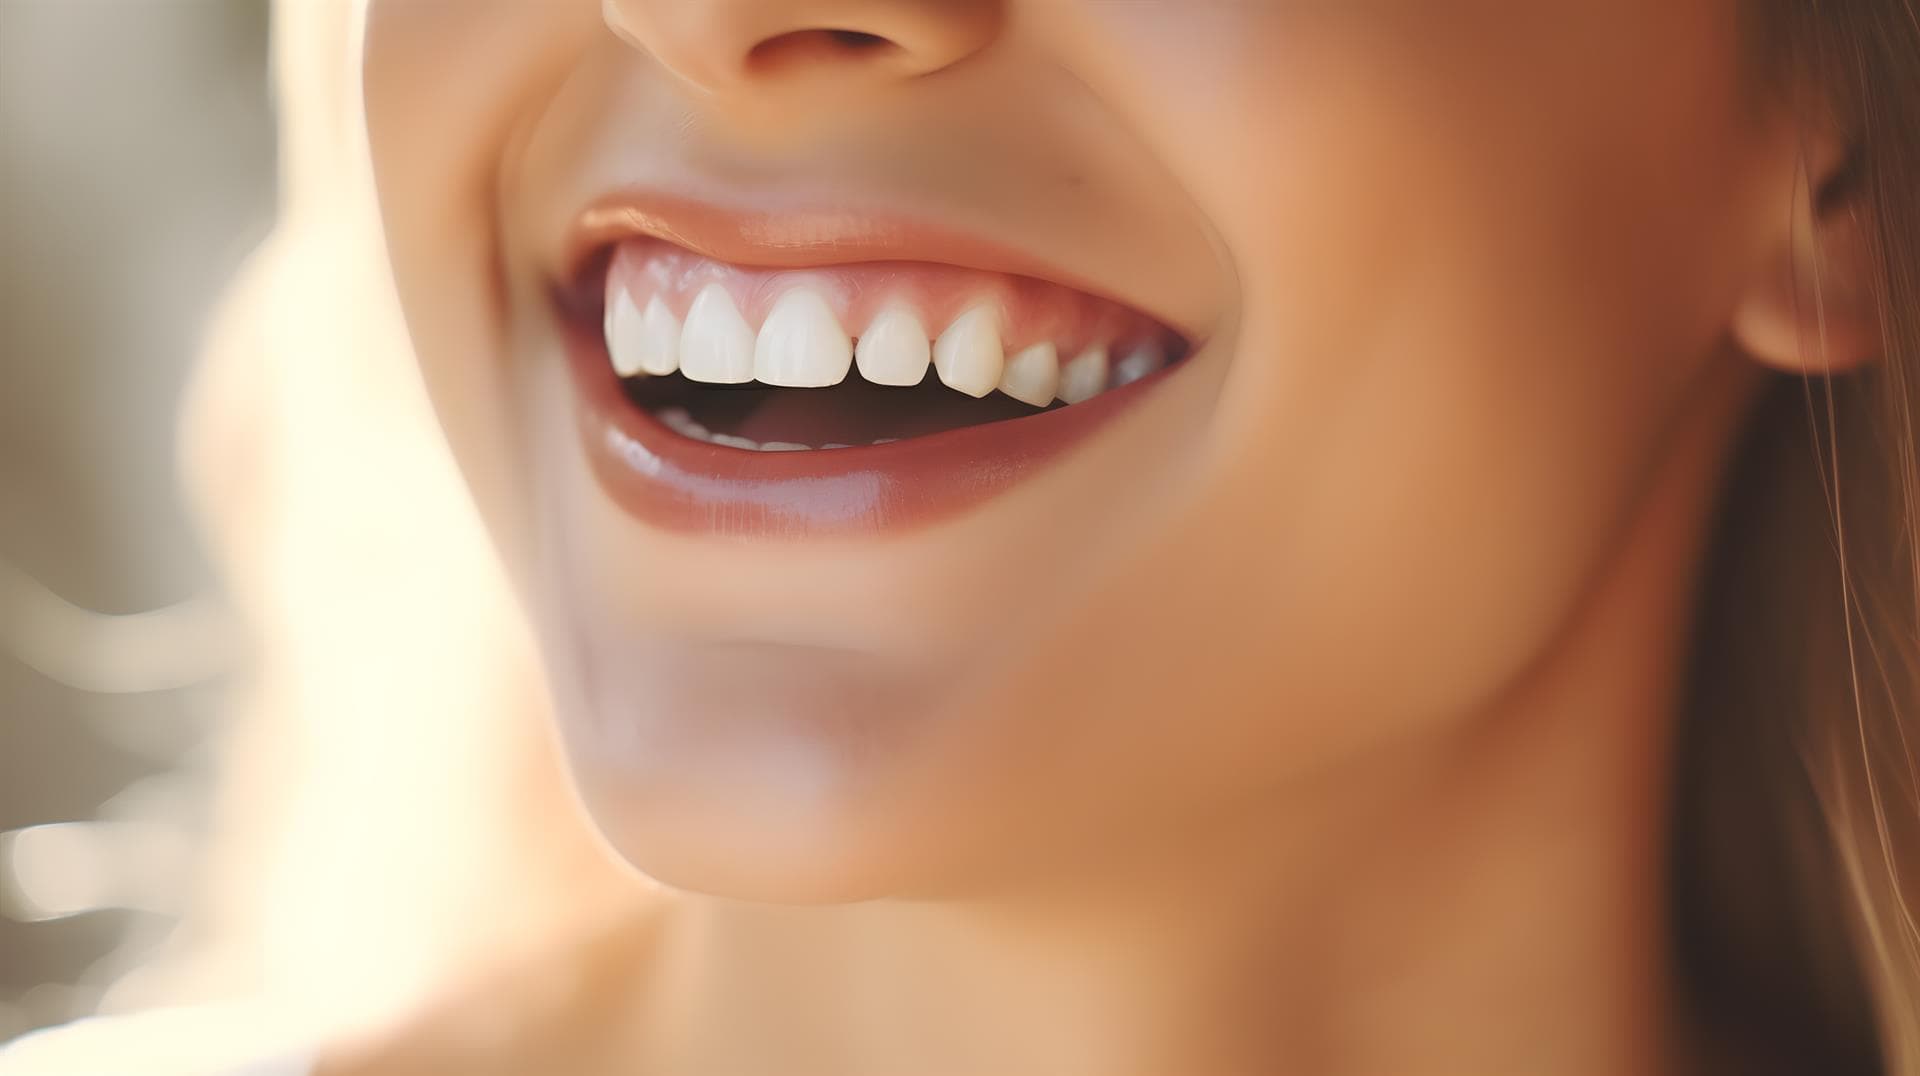 Consigue una bonita sonrisa con un tratamiento estético dental